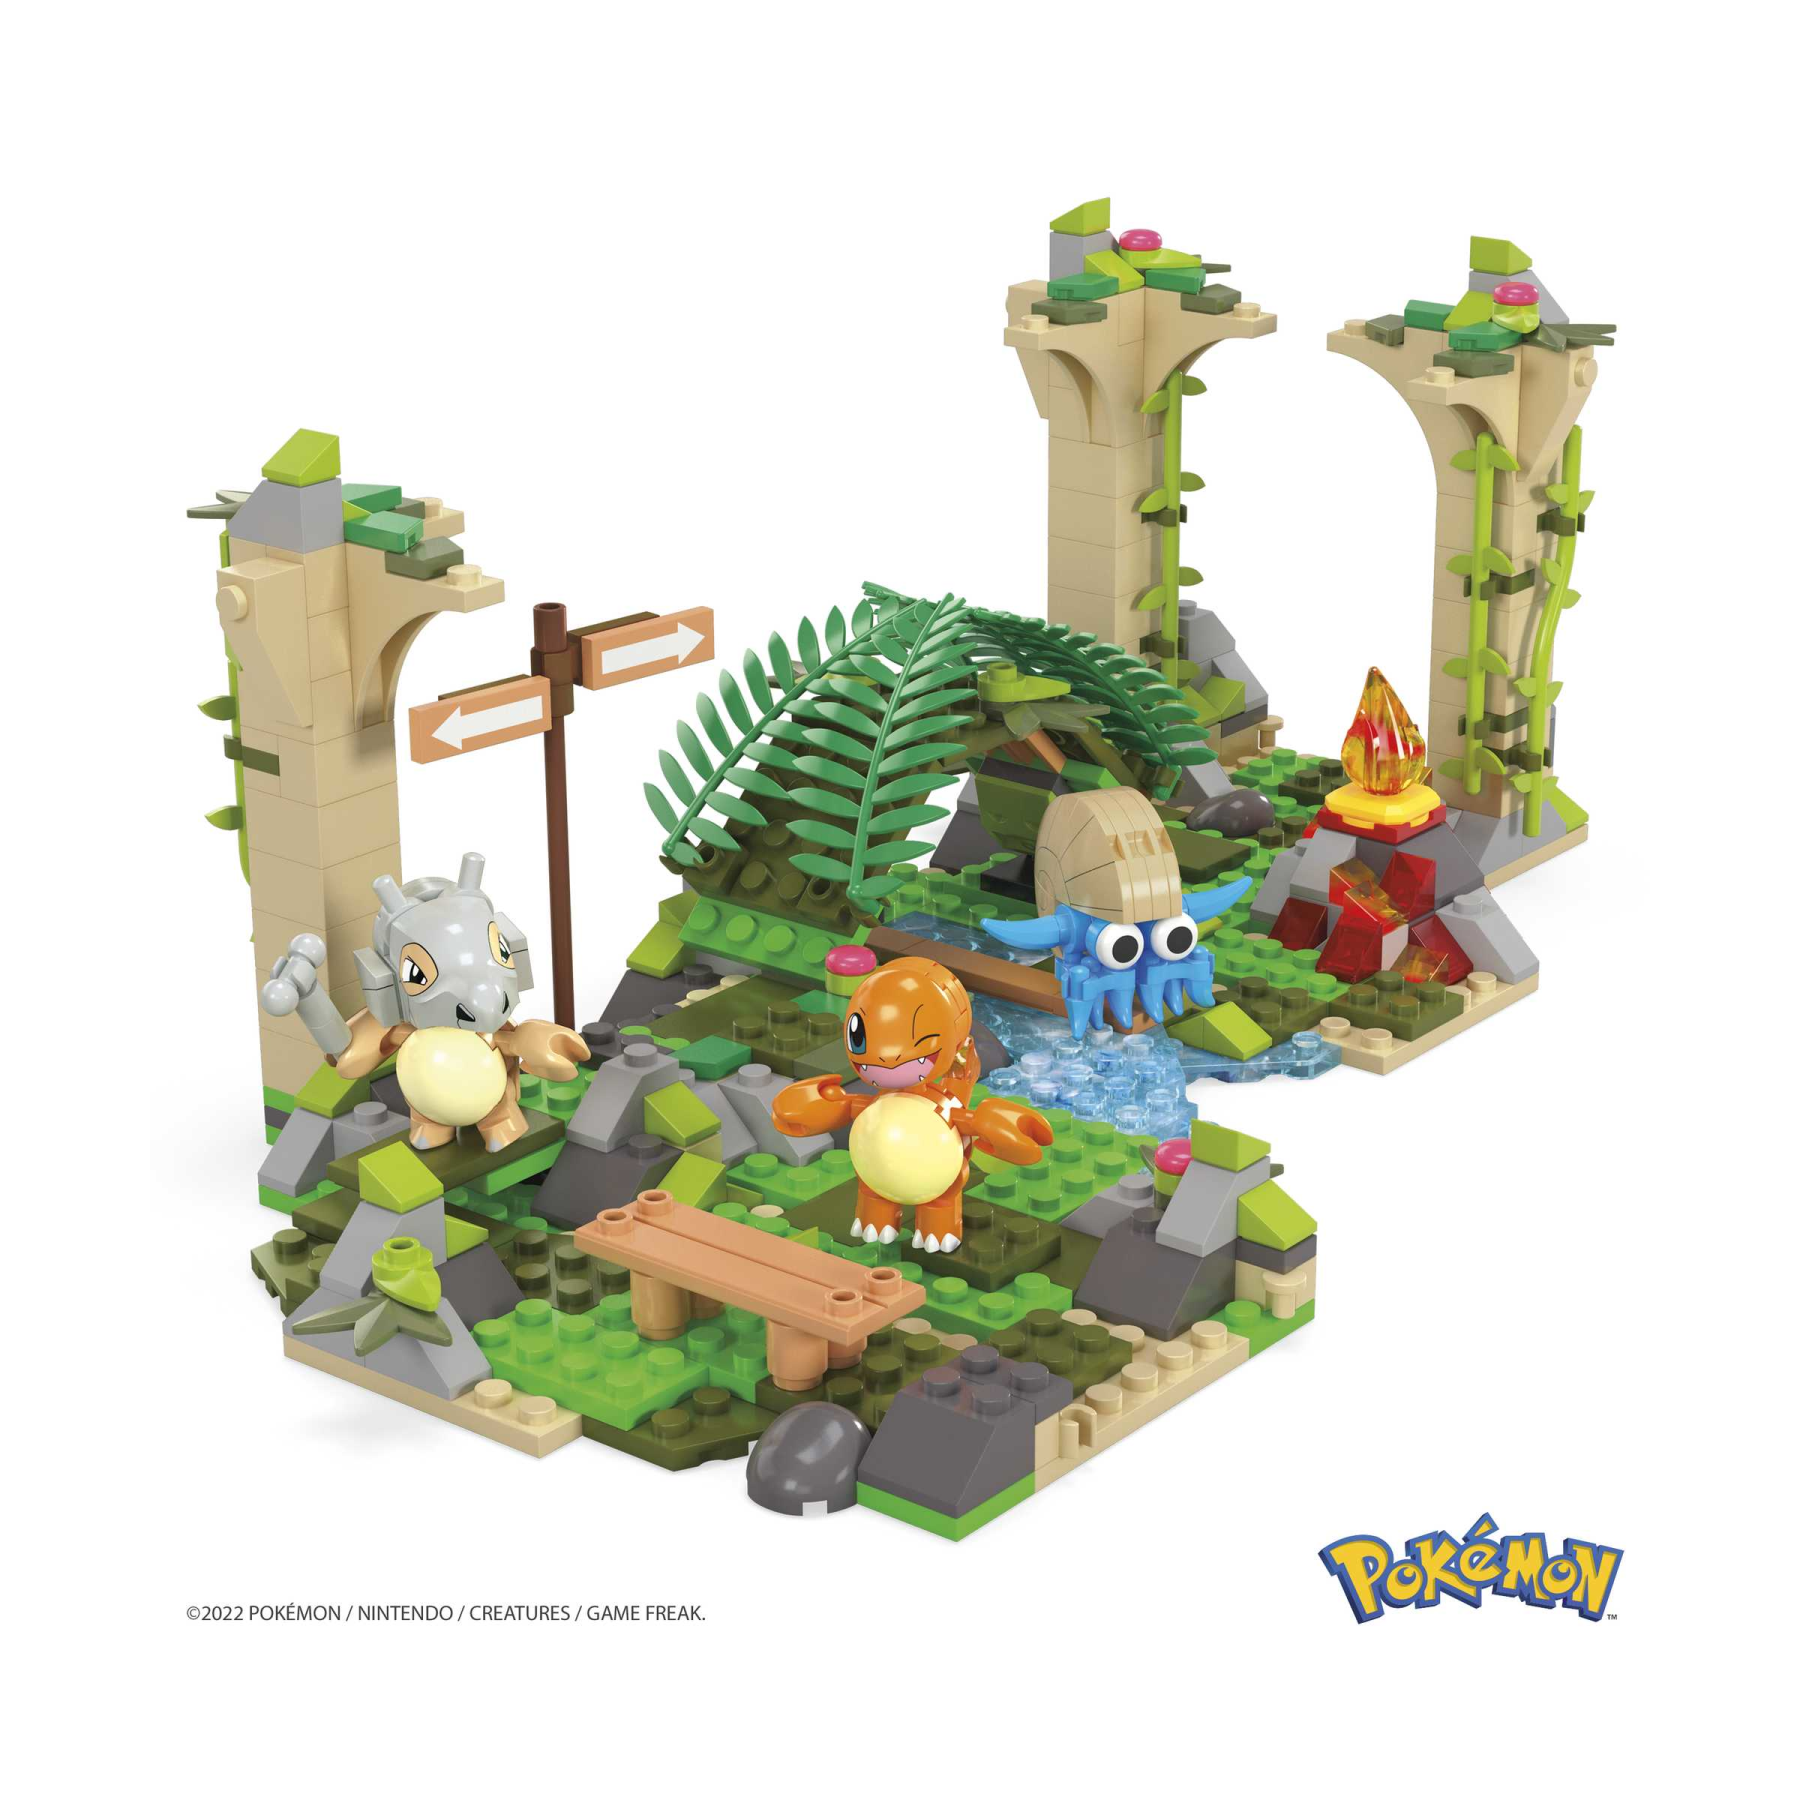 Mega pokémon rovine abbandonate nella giungla set di costruzioni con 464 mattoncini e pezzi compatibili per collegarlo ad altri mondi, set regalo per bambini dai 7 anni in su - 